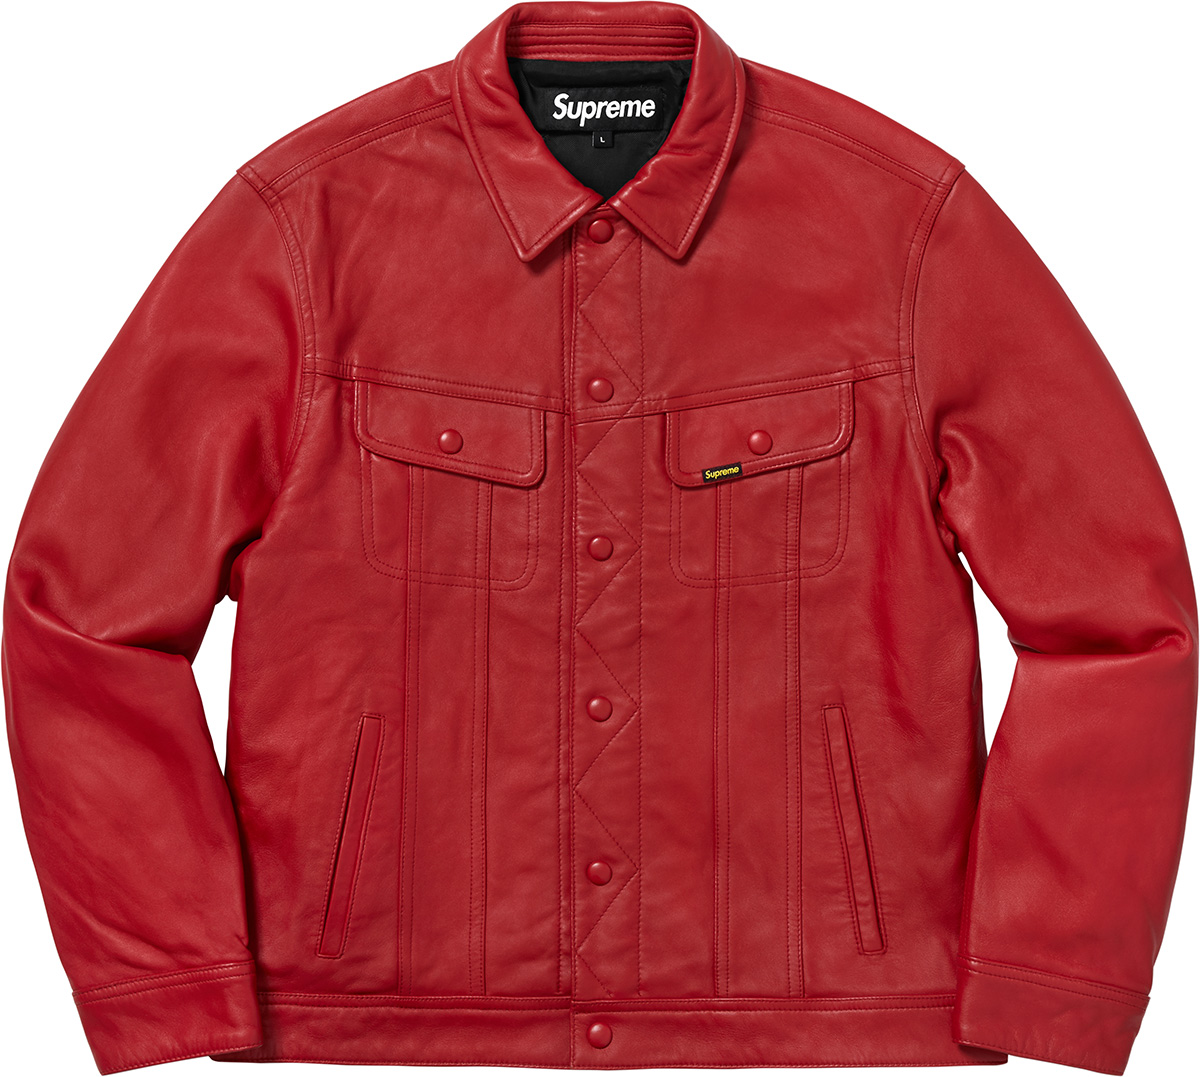 Supreme leather trucker jacket SorM